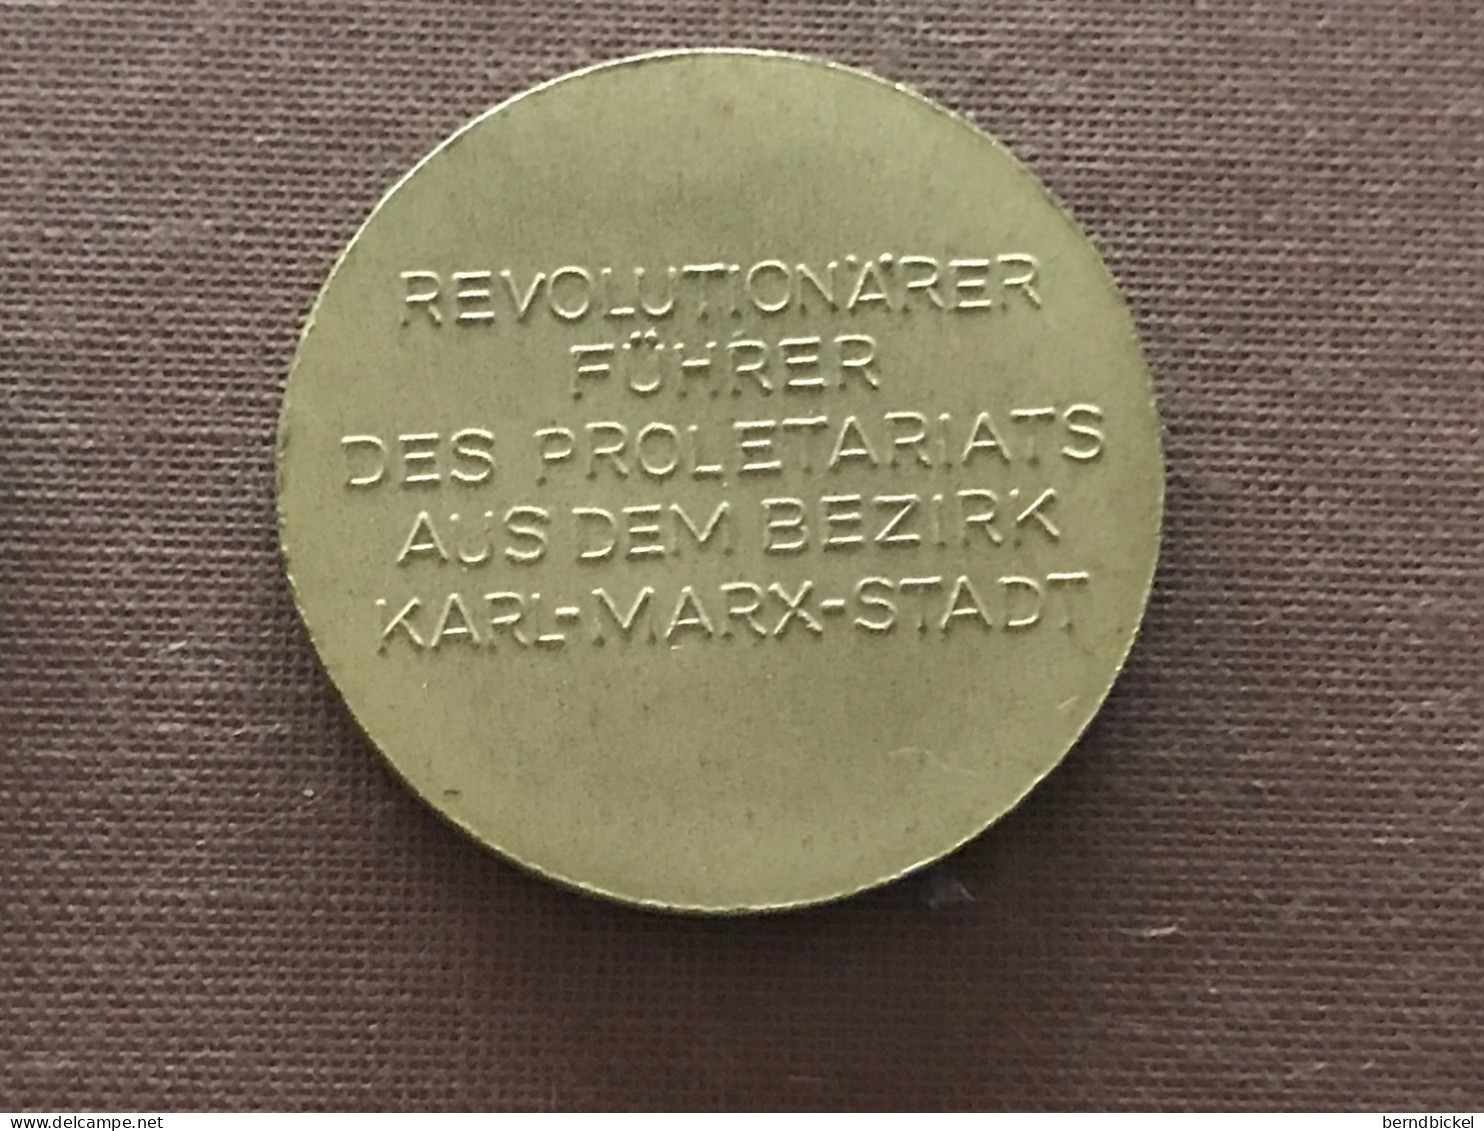 Münze Münzen Medaille DDR Bernd Schneller Revolutionärer Führer - Monarquía/ Nobleza